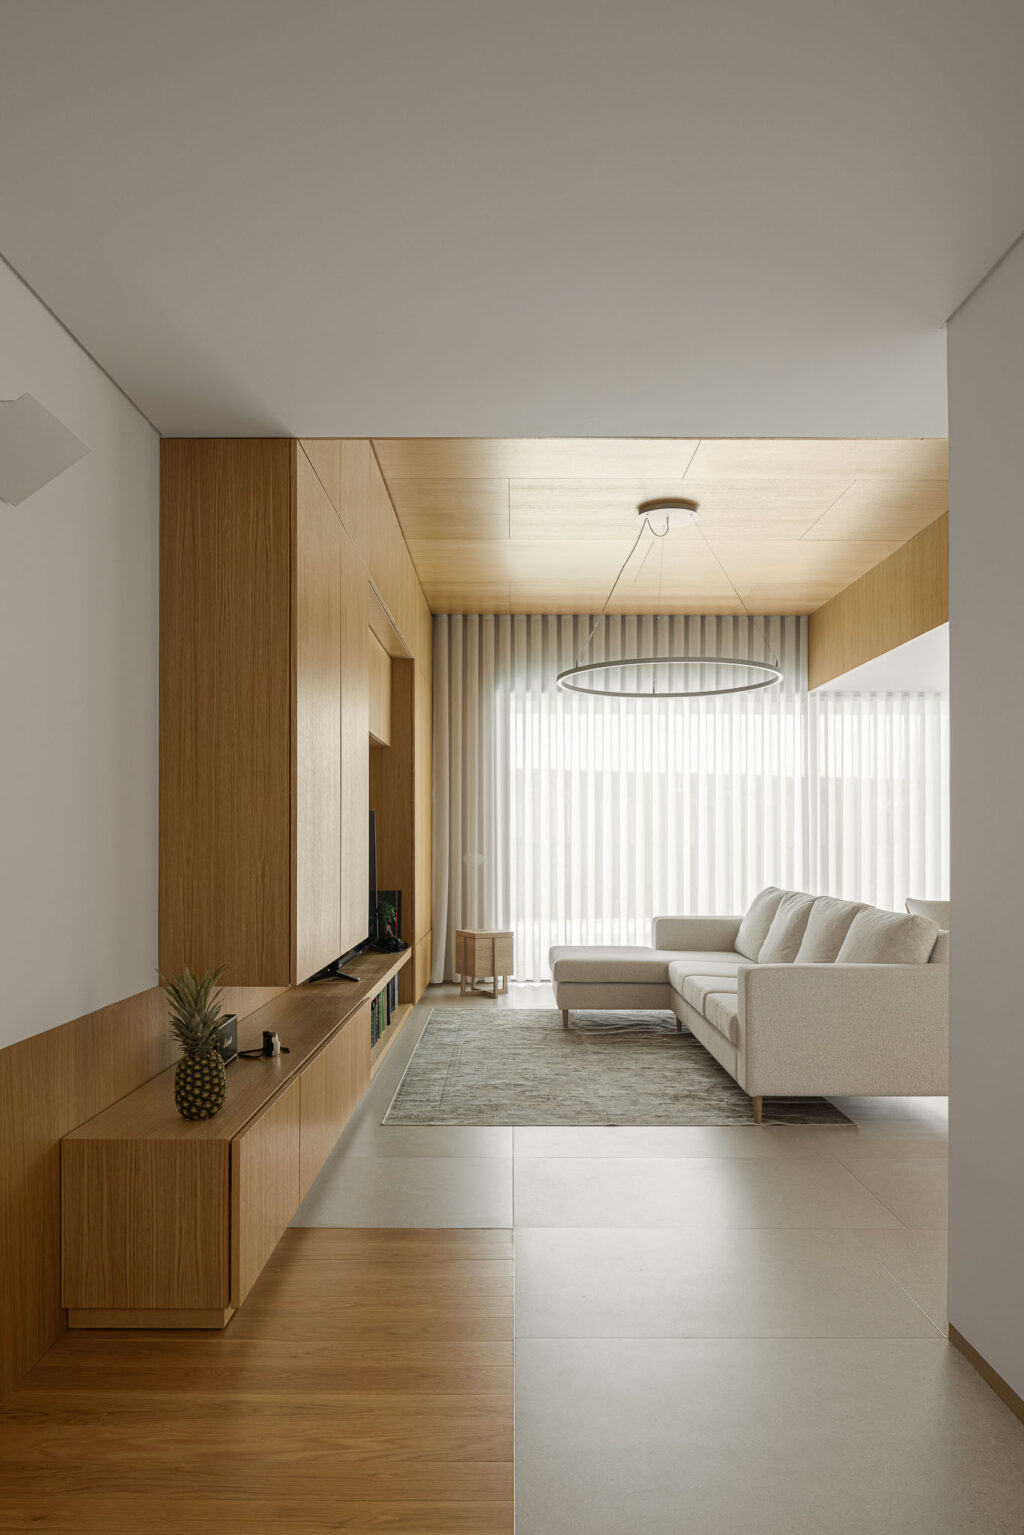 Μια αρχιτεκτονική που αμφισβητεί τις συμβάσεις και δημιουργεί συναισθηματικούς χώρους. Forte House από το Pema Studio